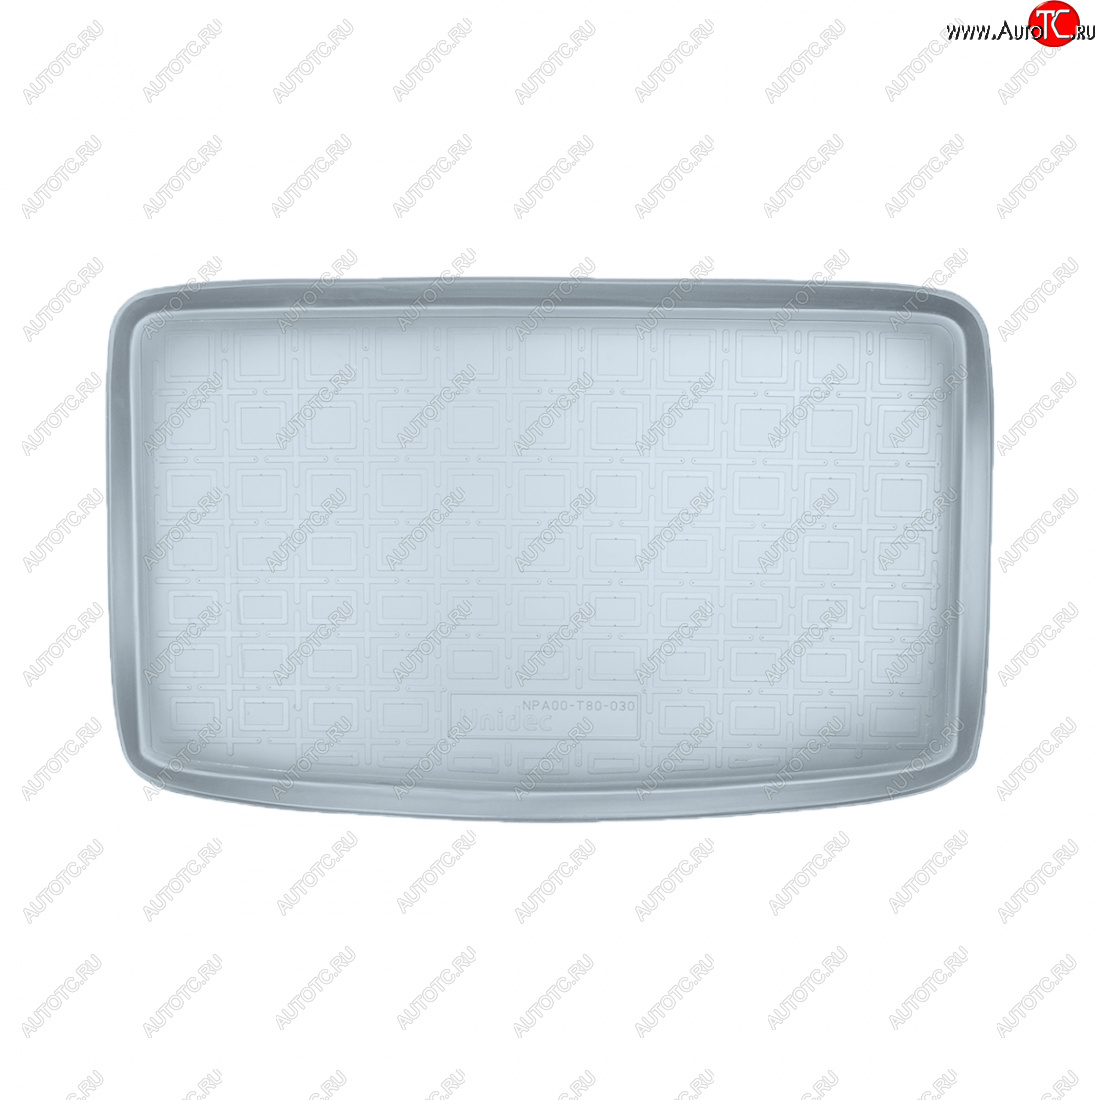 1 579 р. Коврик багажника Norplast Unidec (7 мест разложенный 3-й ряд)  Volkswagen Sharan  MK2,7N (2010-2015) (серый)